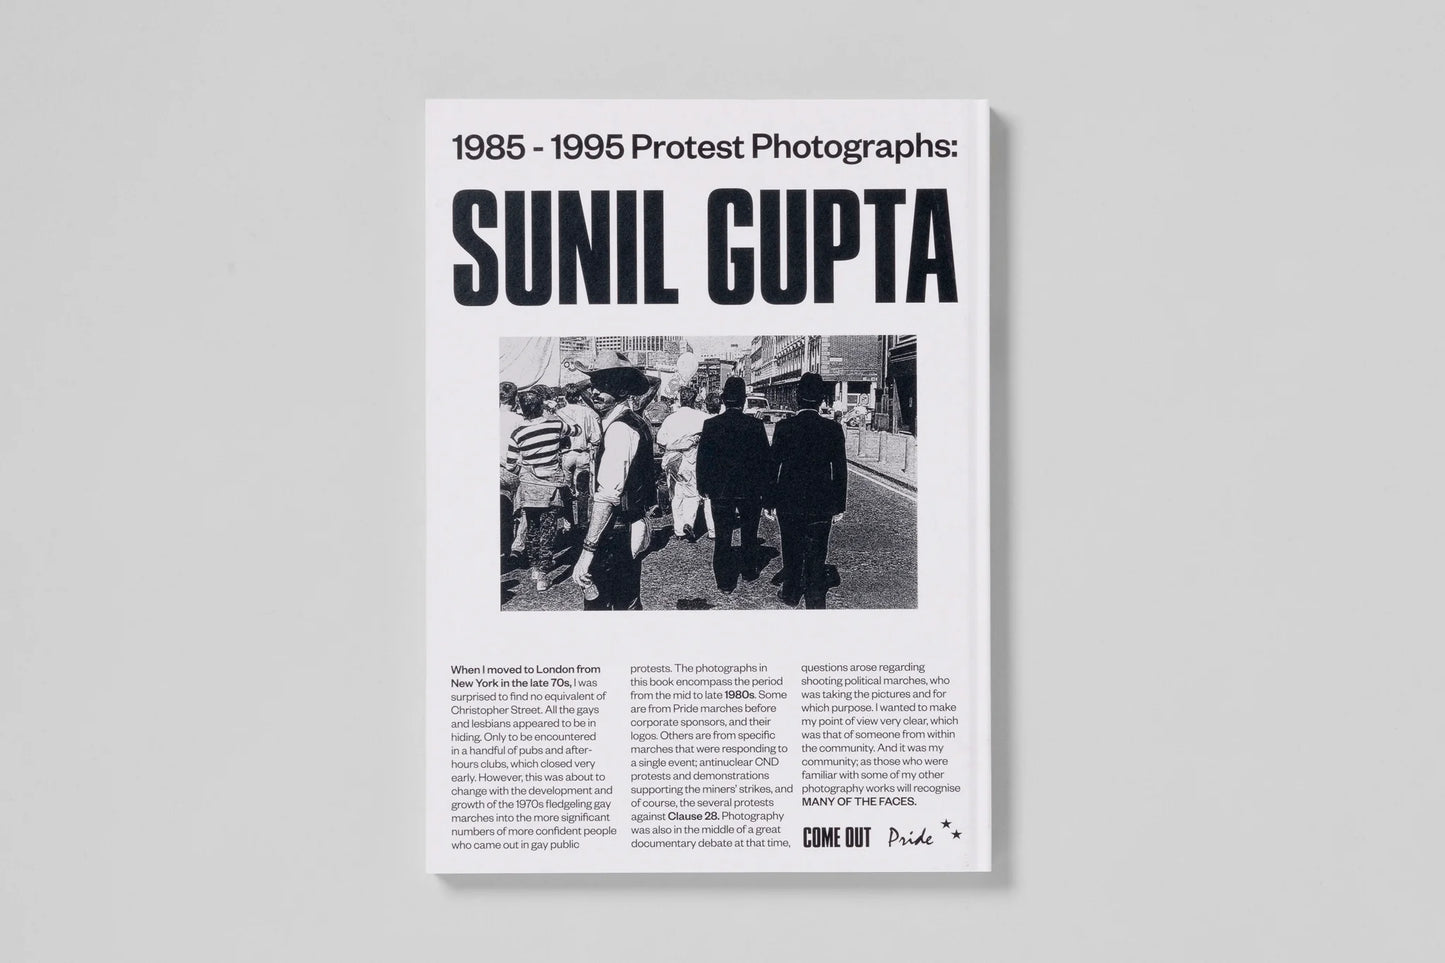 Sunil Gupta - COME OUT